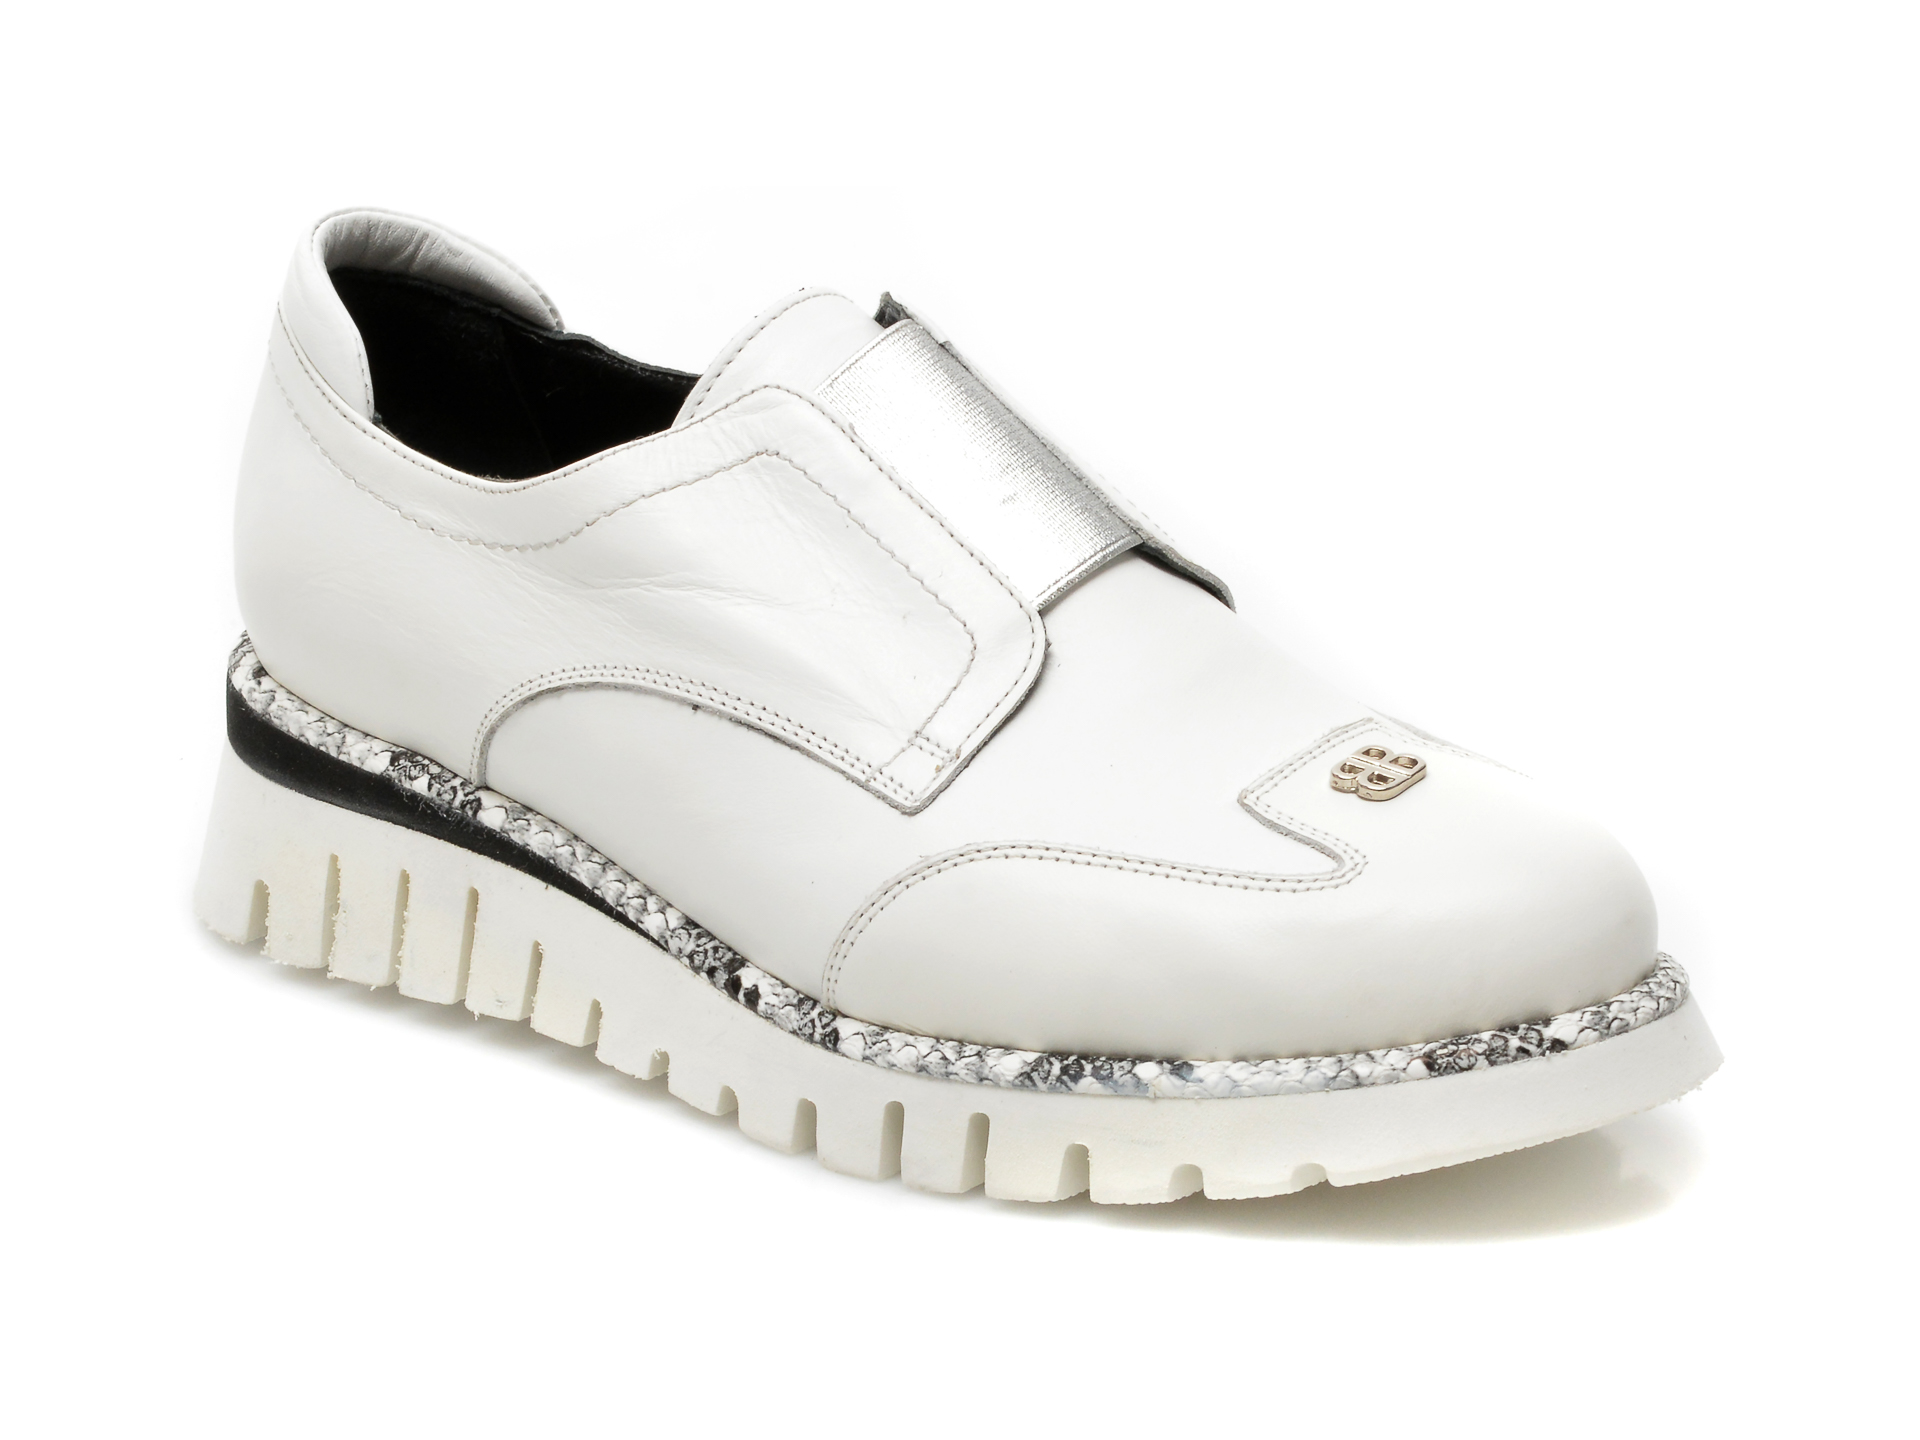 Pantofi MODNIZZA albi, H129, din piele naturala MODNIZZA imagine noua